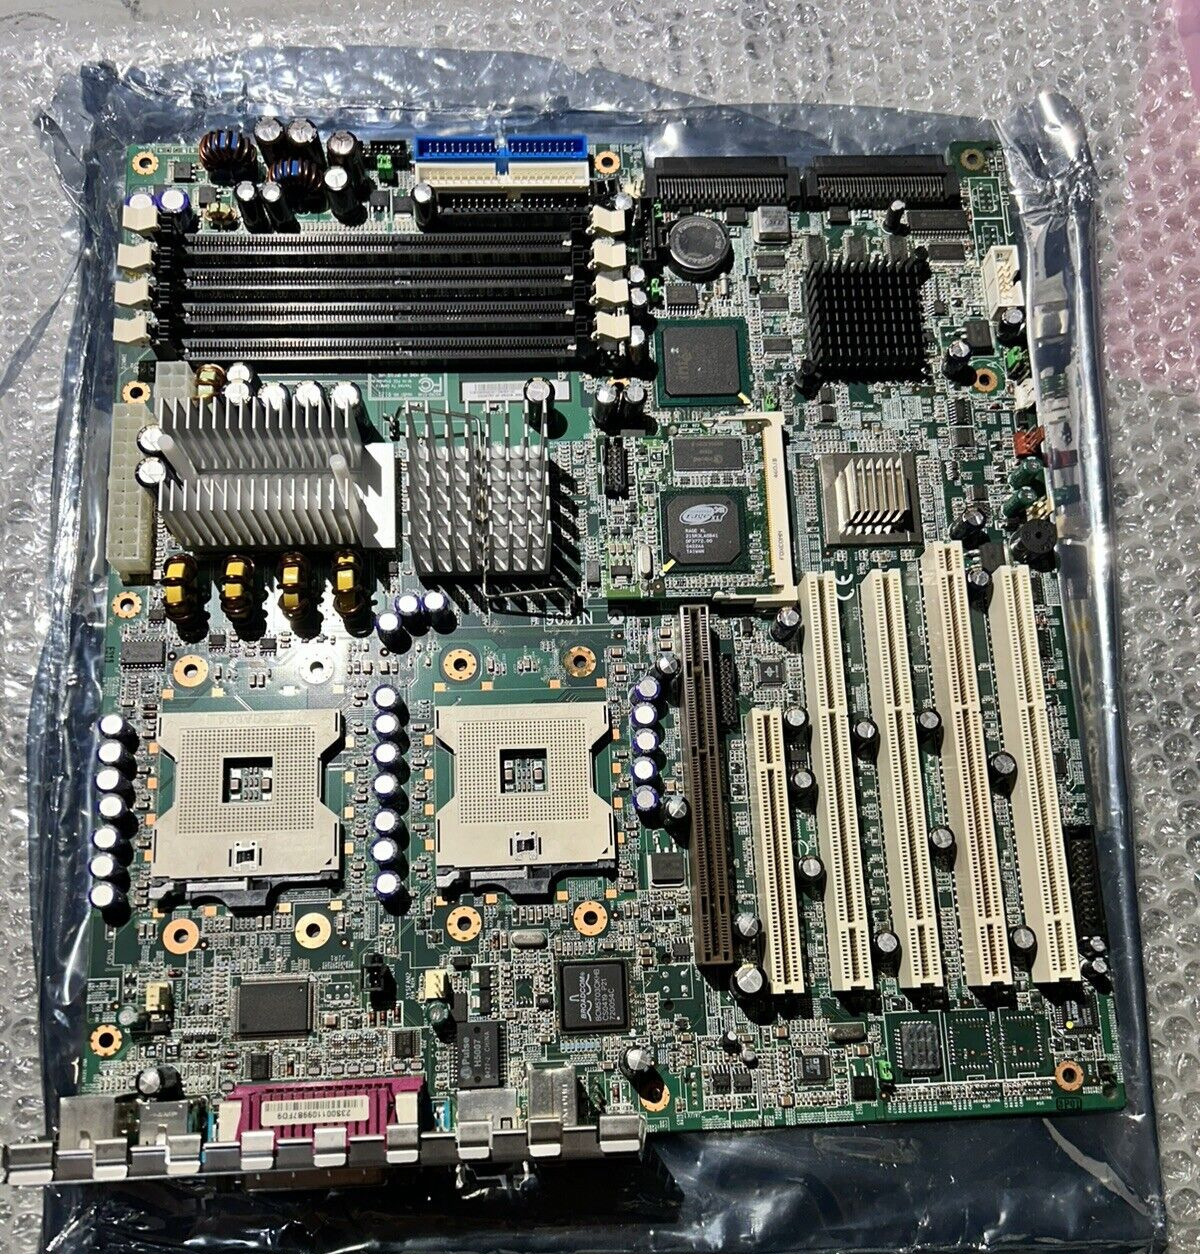 IBM X225 SERIES Eserver Motherboard 13N2098 43W9207